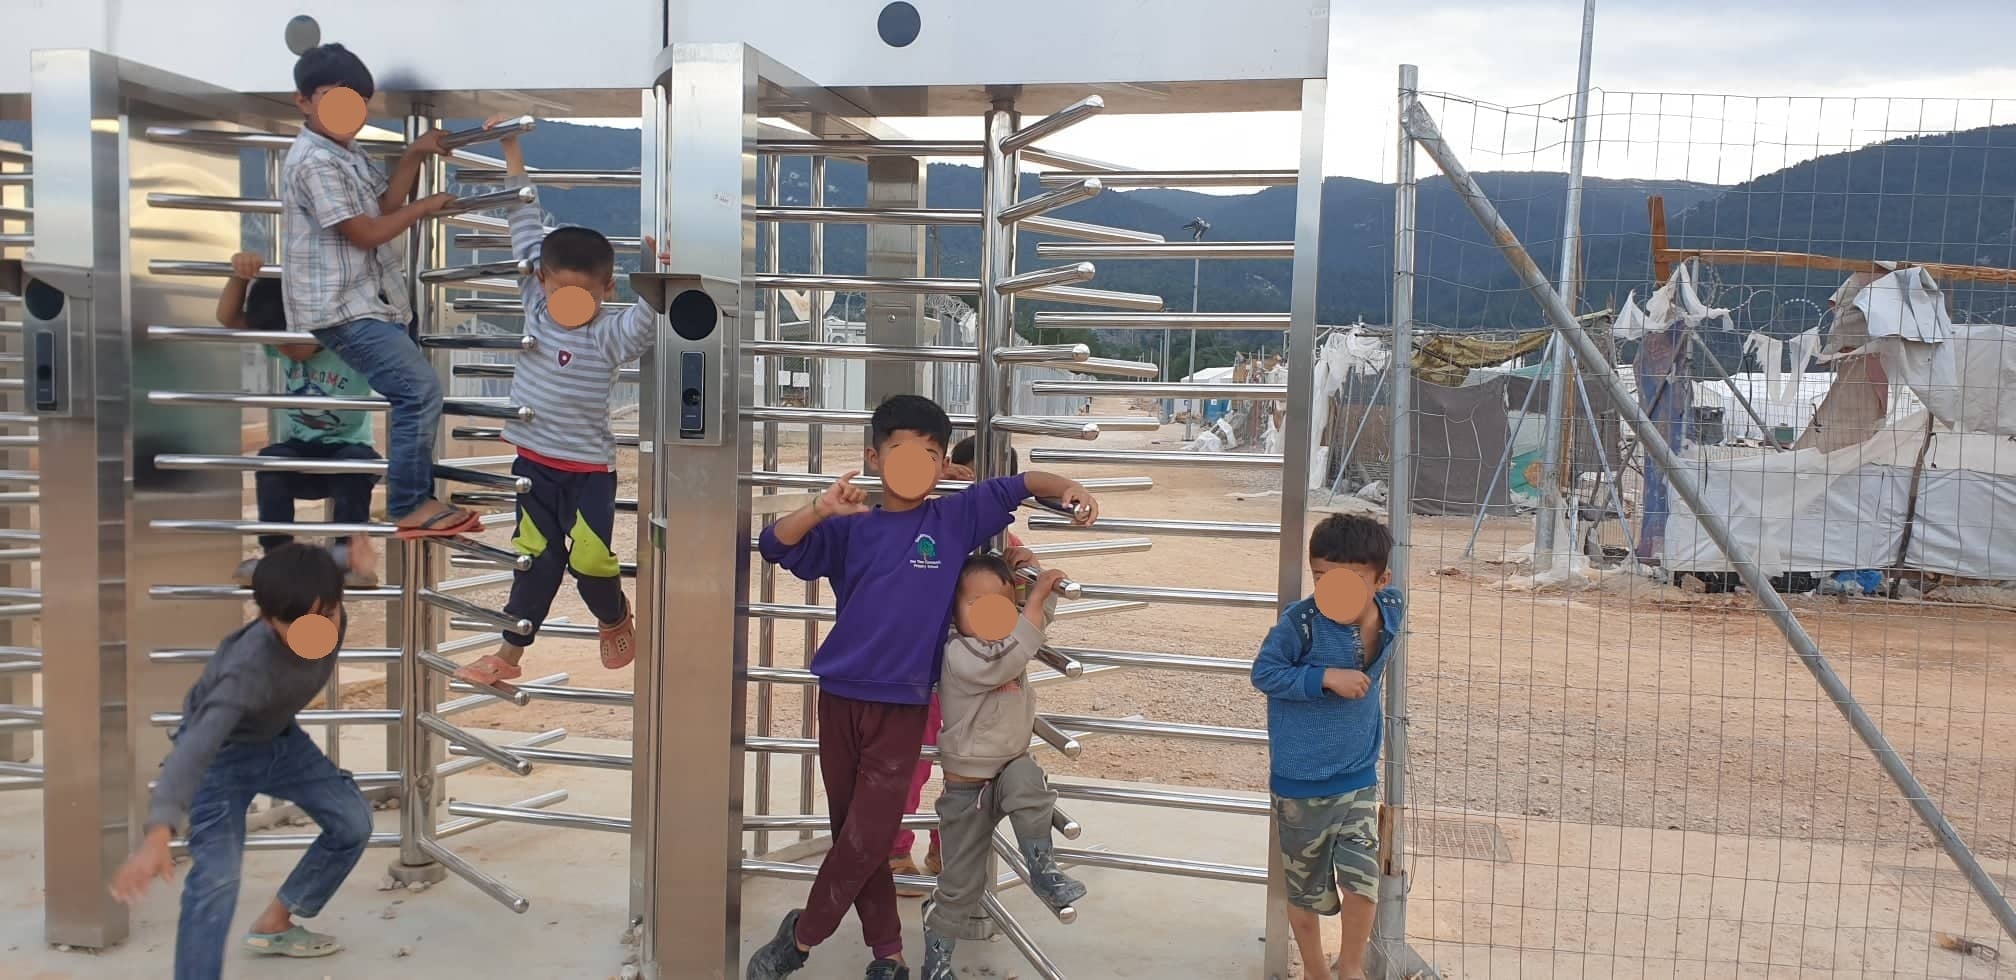 کمپهای پناهندگی در یونان: از پناهجویی تا اسارت